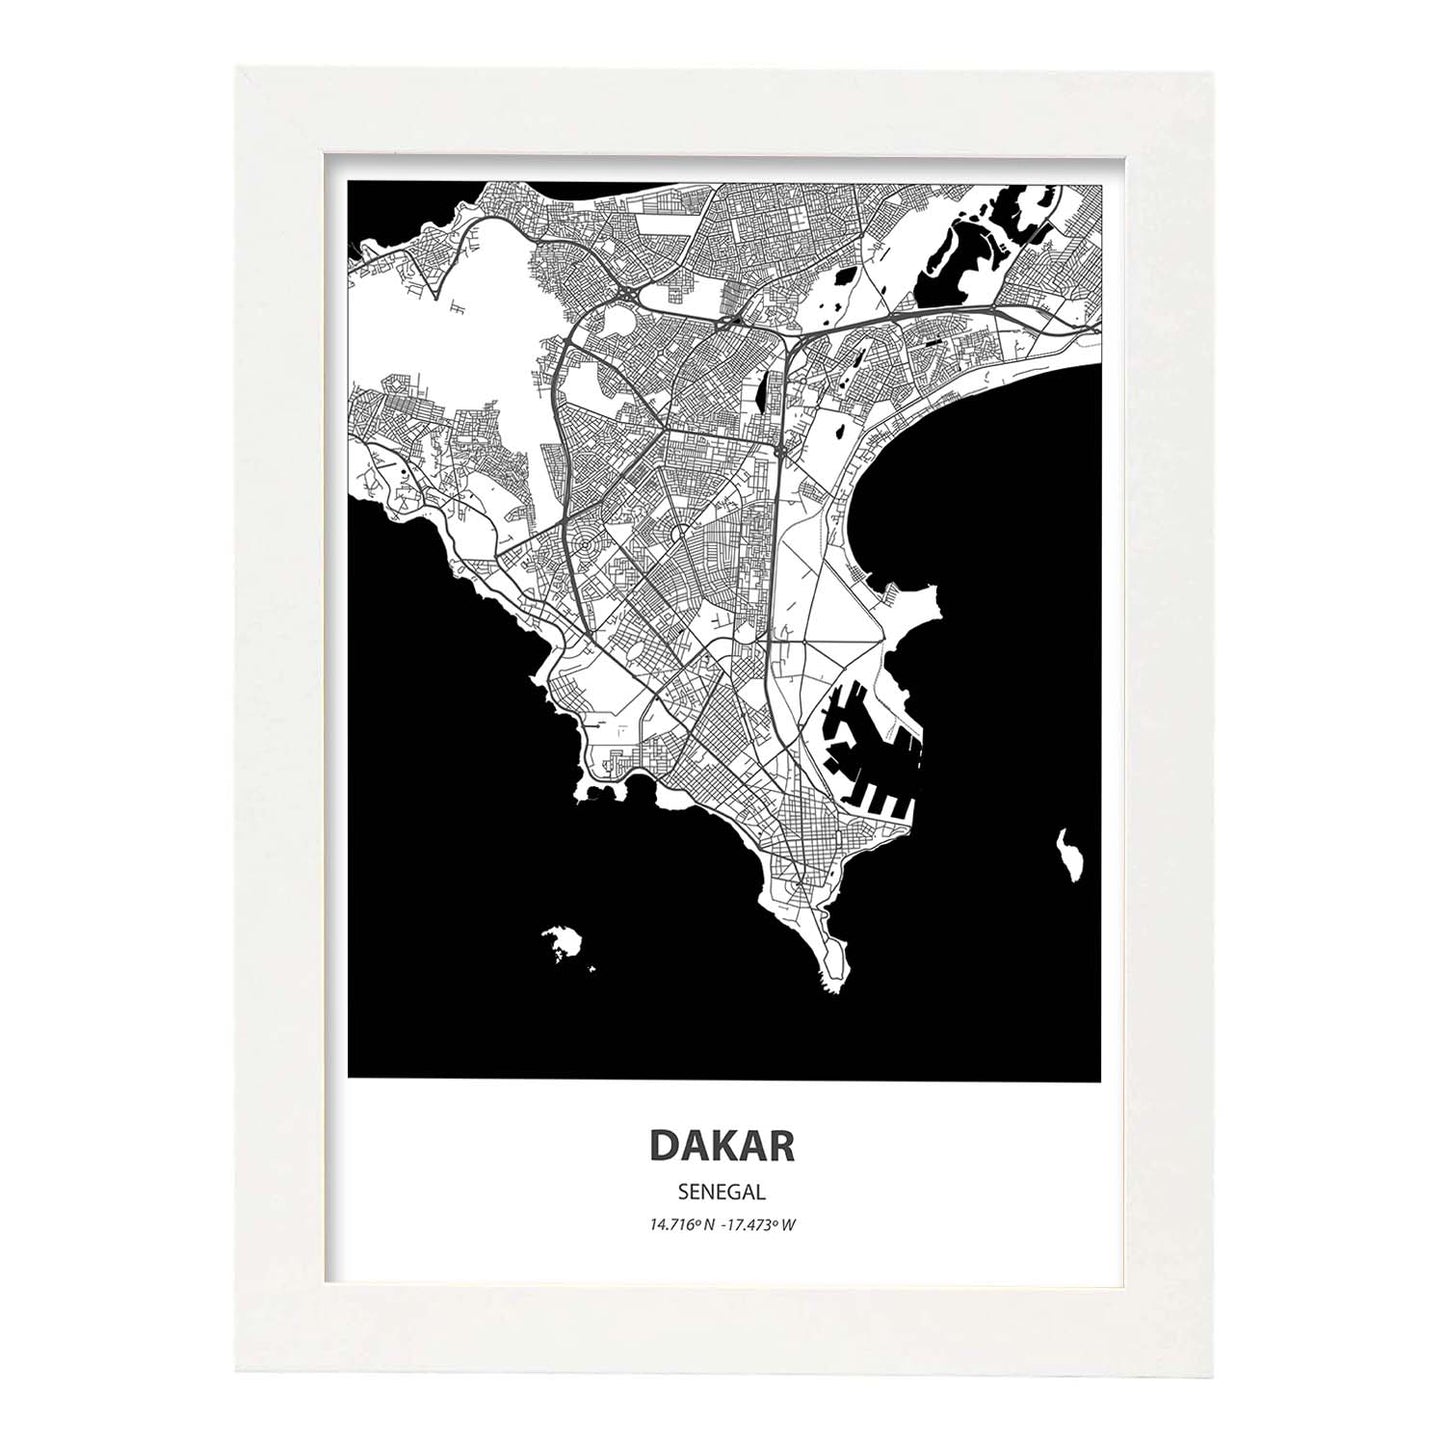 Poster con mapa de Dakar - Senegal. Láminas de ciudades de África con mares y ríos en color negro.-Artwork-Nacnic-A4-Marco Blanco-Nacnic Estudio SL